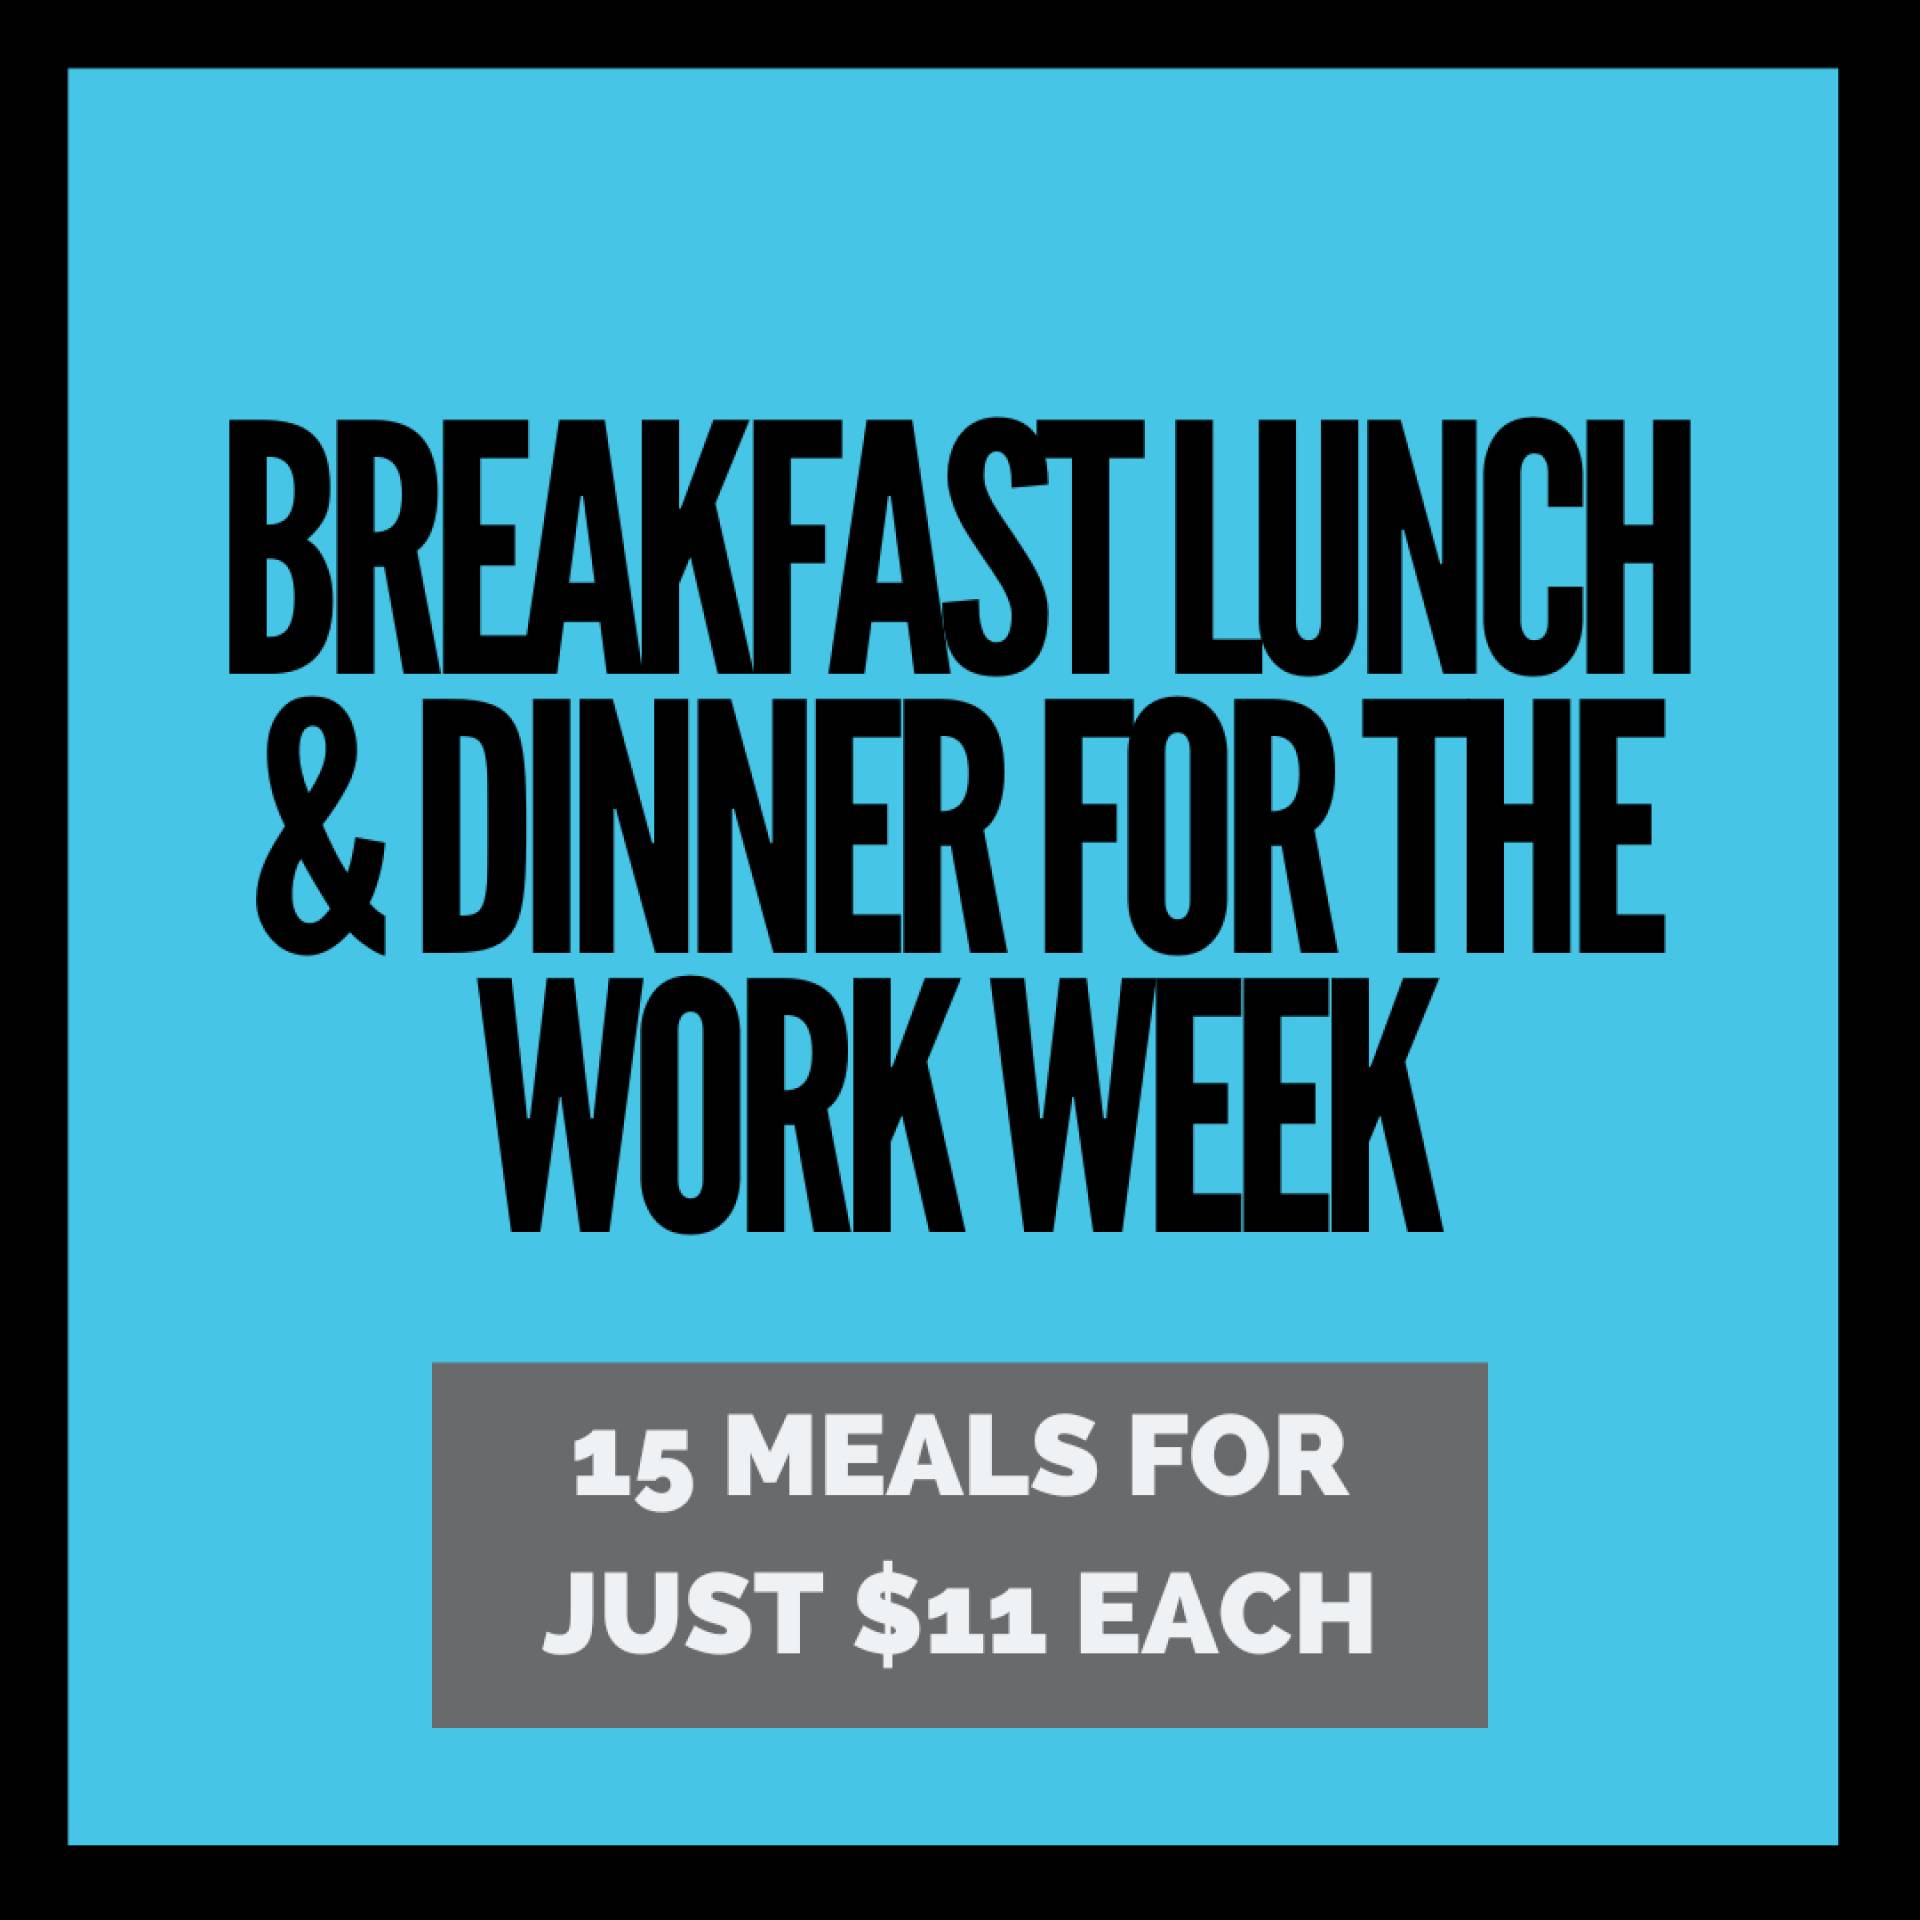 Weekdays Breakfast, Lunch, Dinner